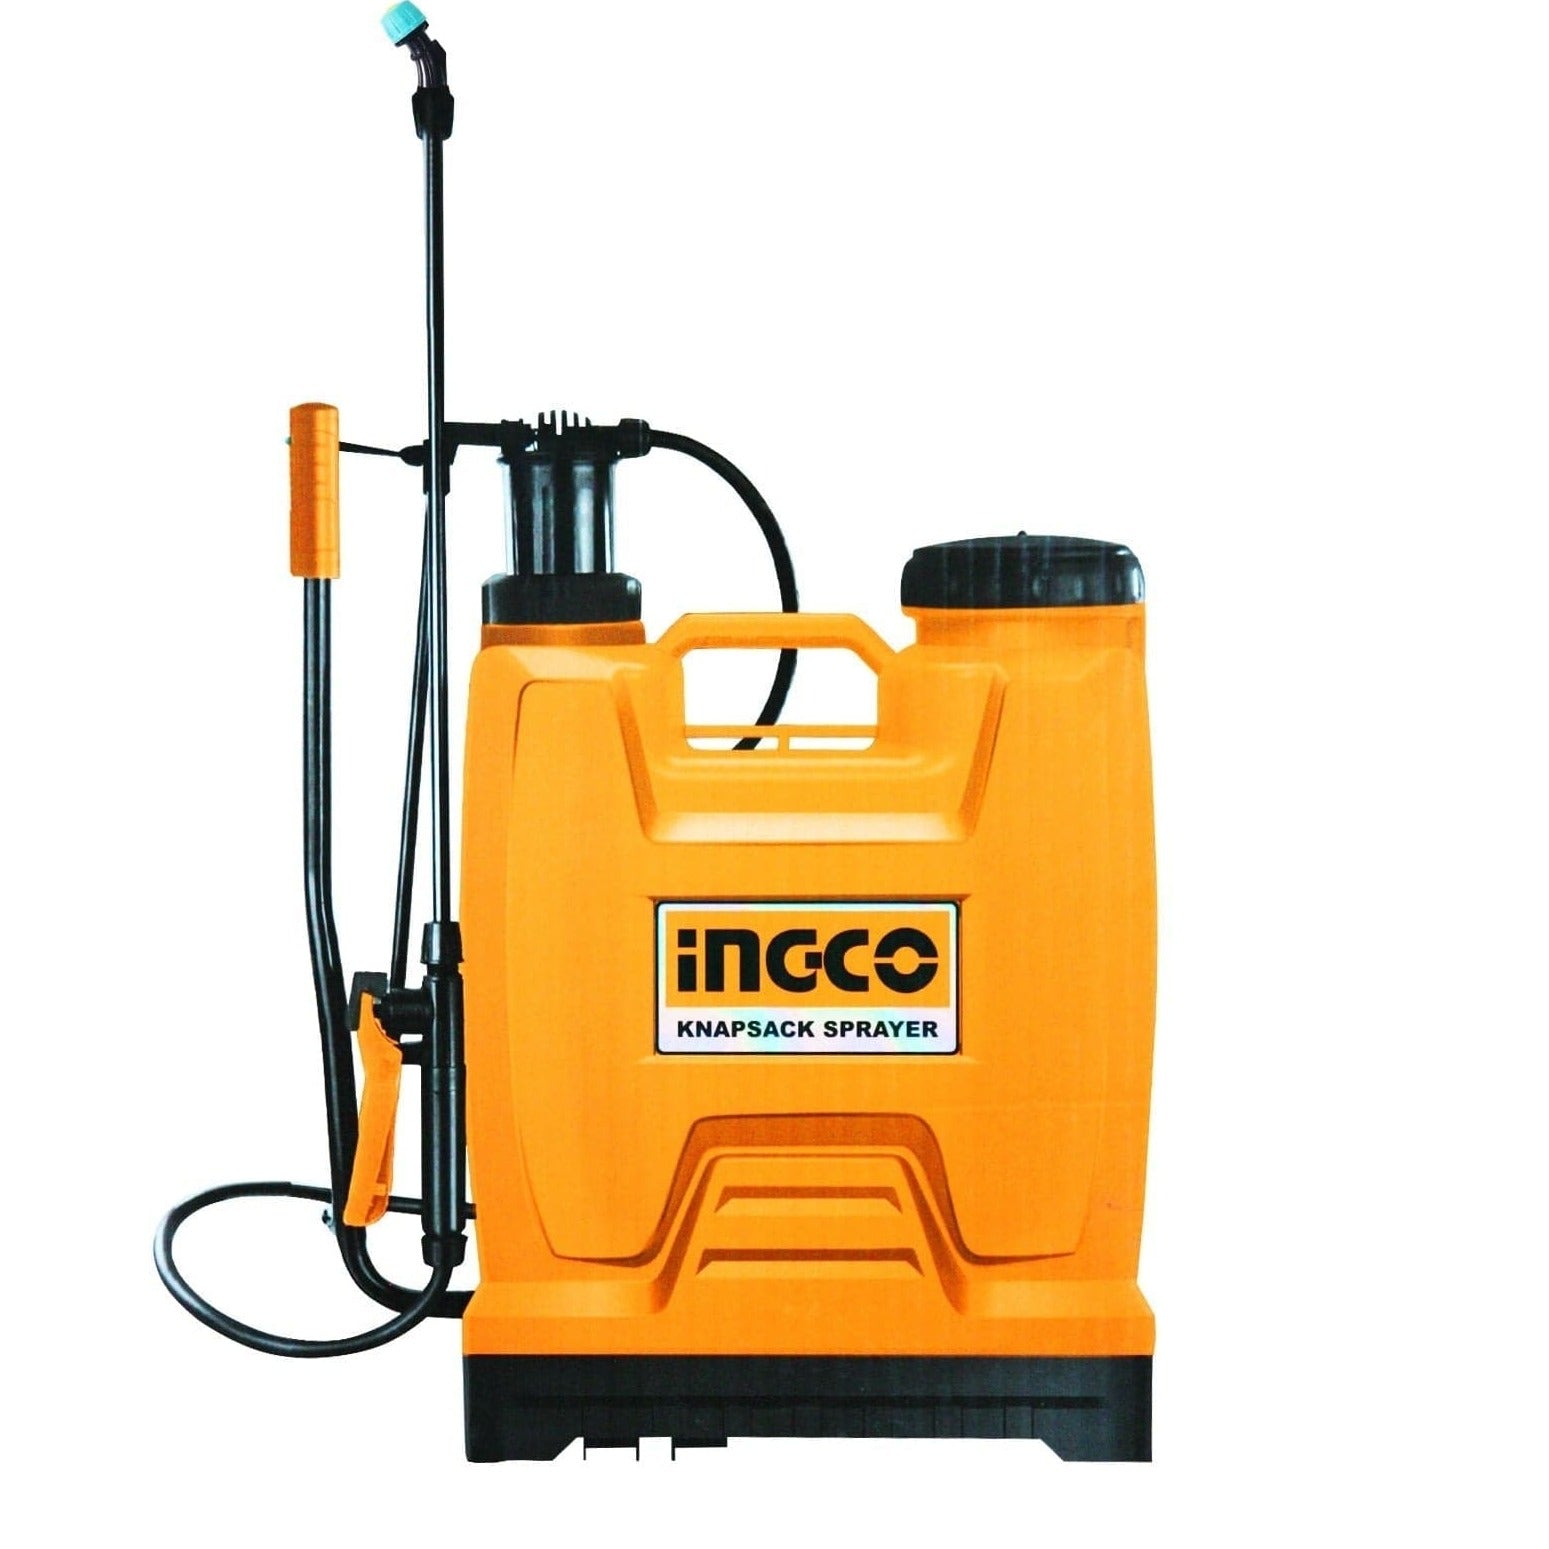 Ingco 20L Manual Knapsack Sprayer - HSPP42002 | Supply Master | Accra, Ghana Spray Gun Buy Tools hardware Building materials